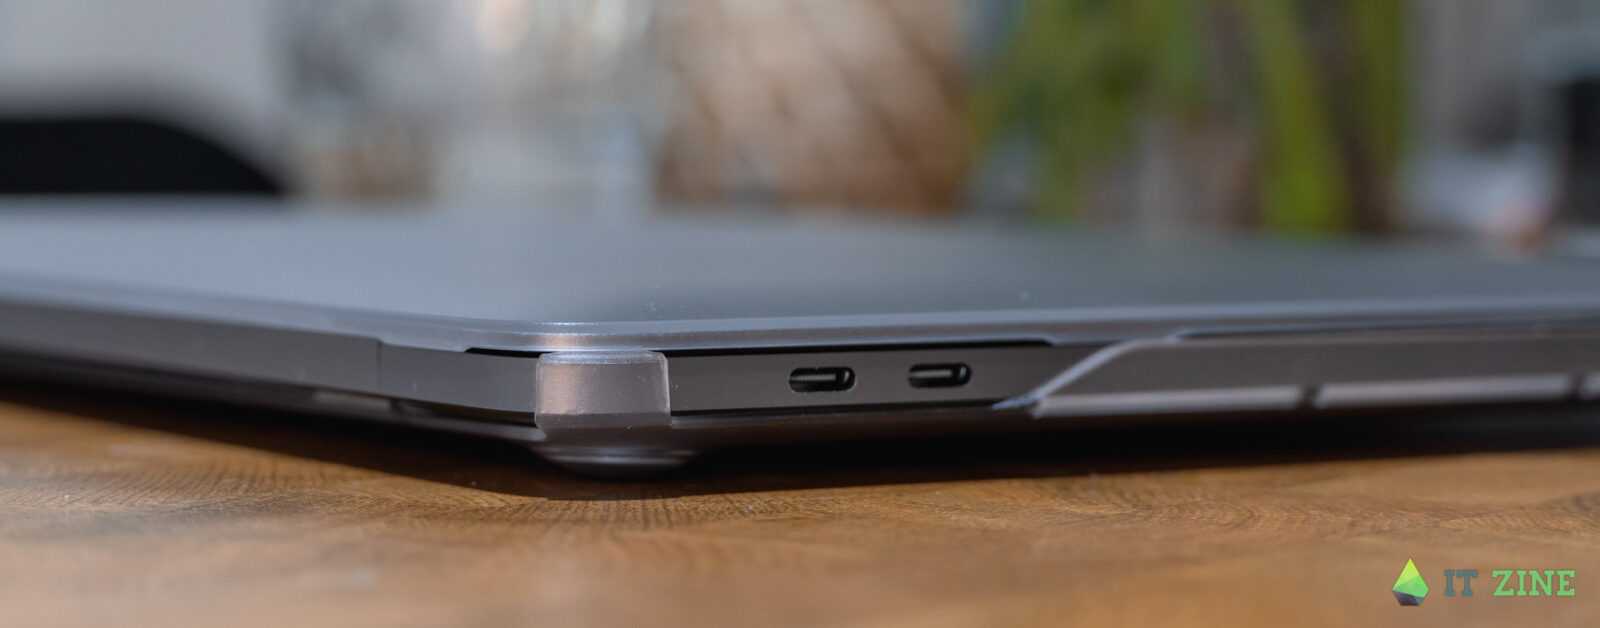 Обзор кейсов Moshi versacover и iGlaze для iPad Pro и MacBook Pro: безопасность превыше всего (itzine.ru Moshi cases 17)